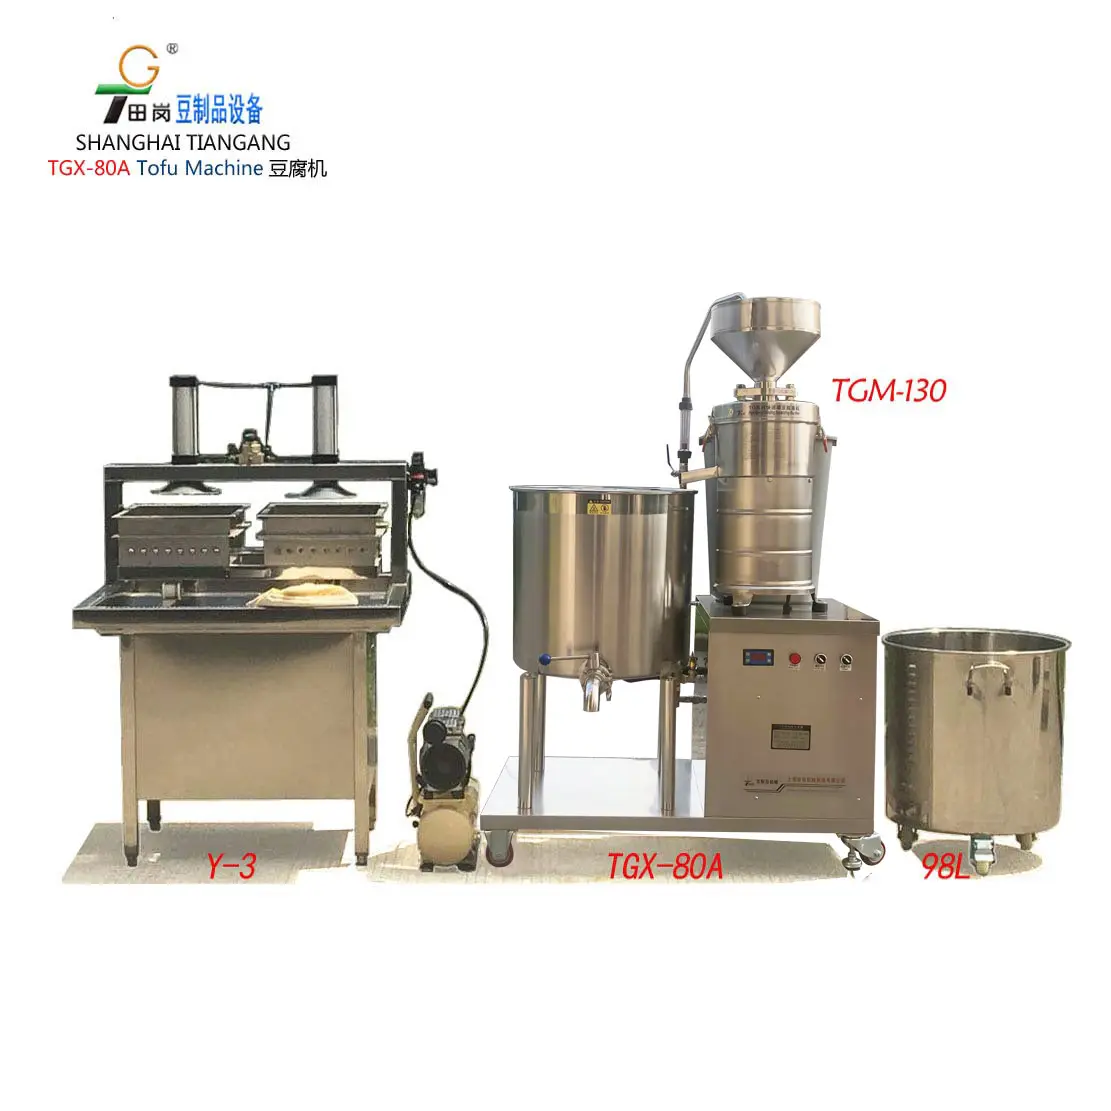 Équipement pour la fabrication de Tofu, Machine de traitement du lait de soja, équipement de traitement des haricots, TGX-80A